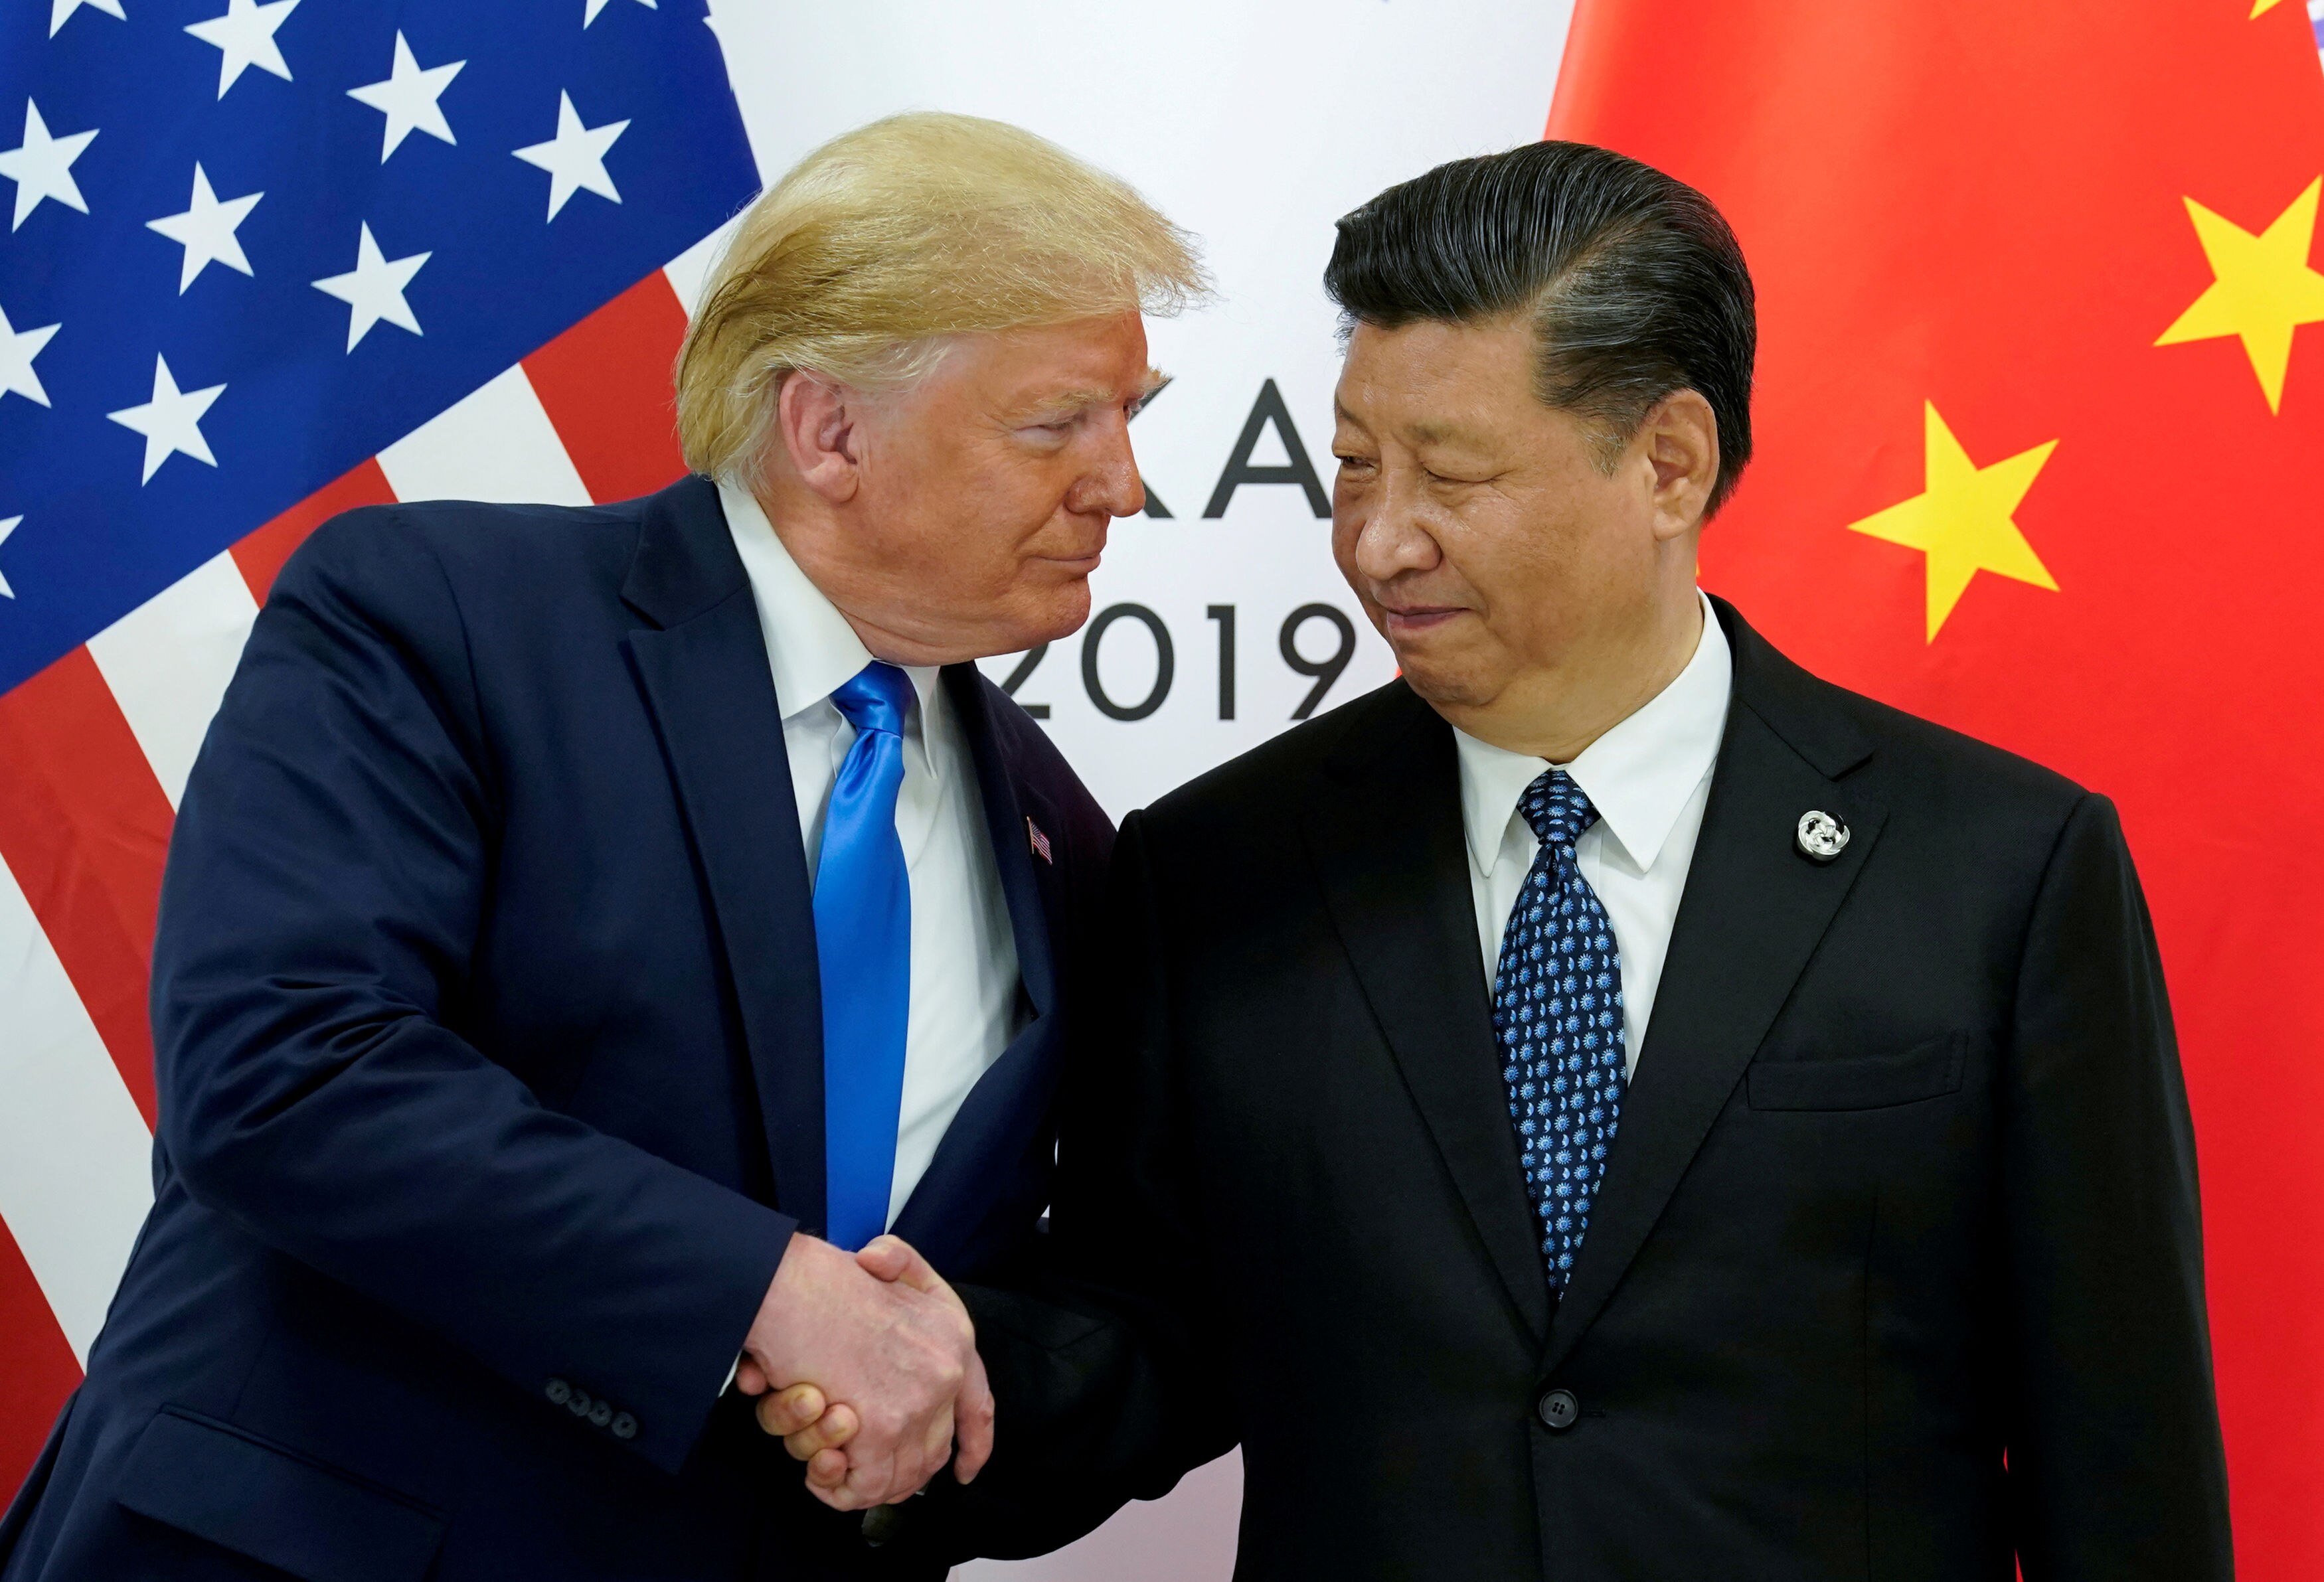 Qualquer desfecho é possível no impasse entre China e EUA”, diz